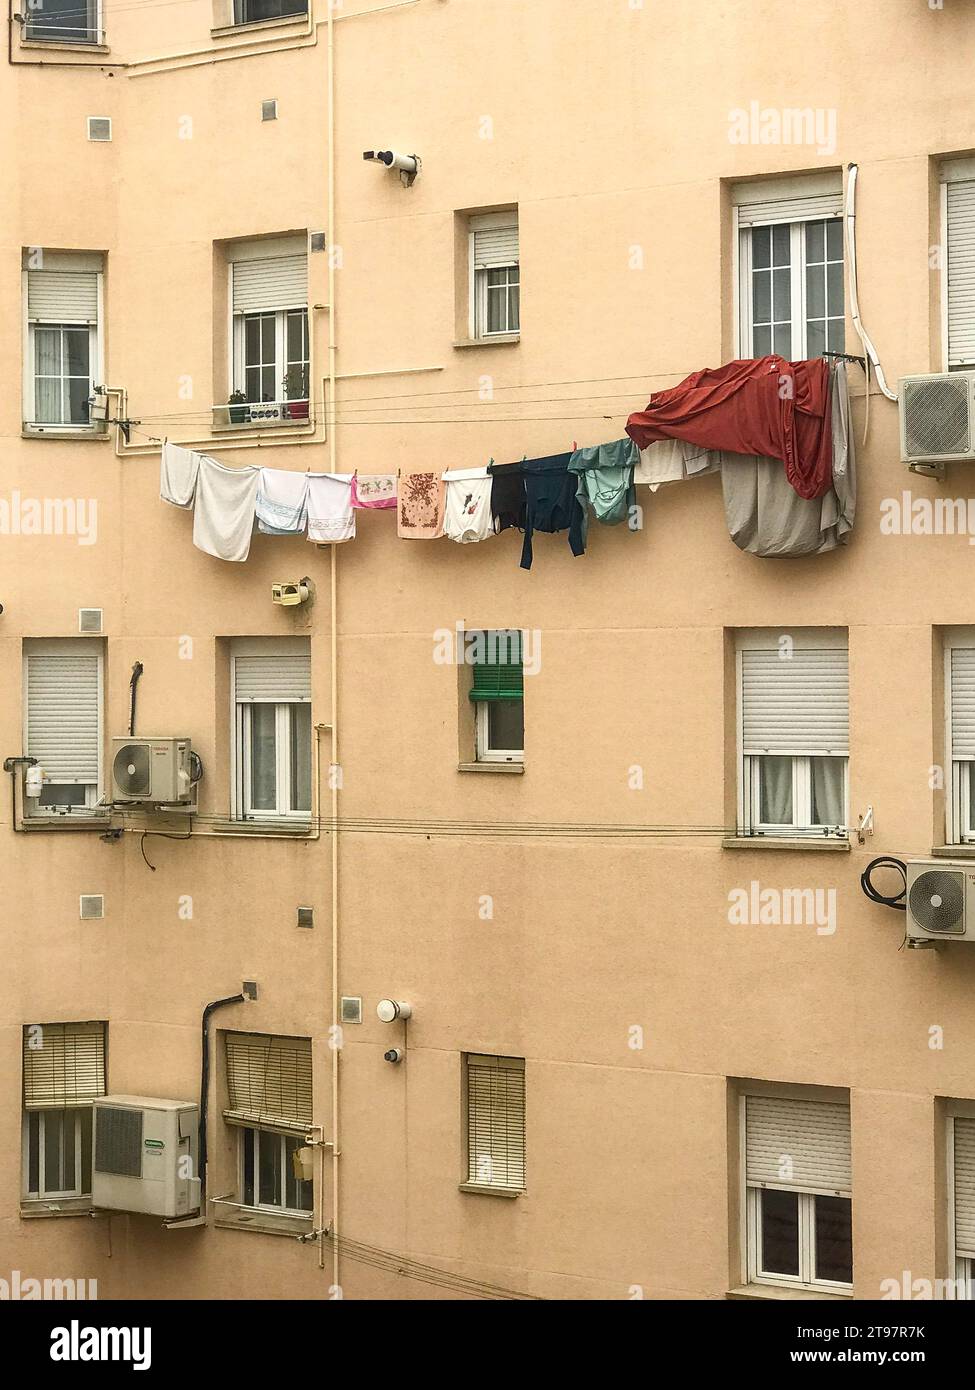 Linge suspendu à un fil dans la fenêtre d'un immeuble dans un quartier de Madrid, Espagne Banque D'Images